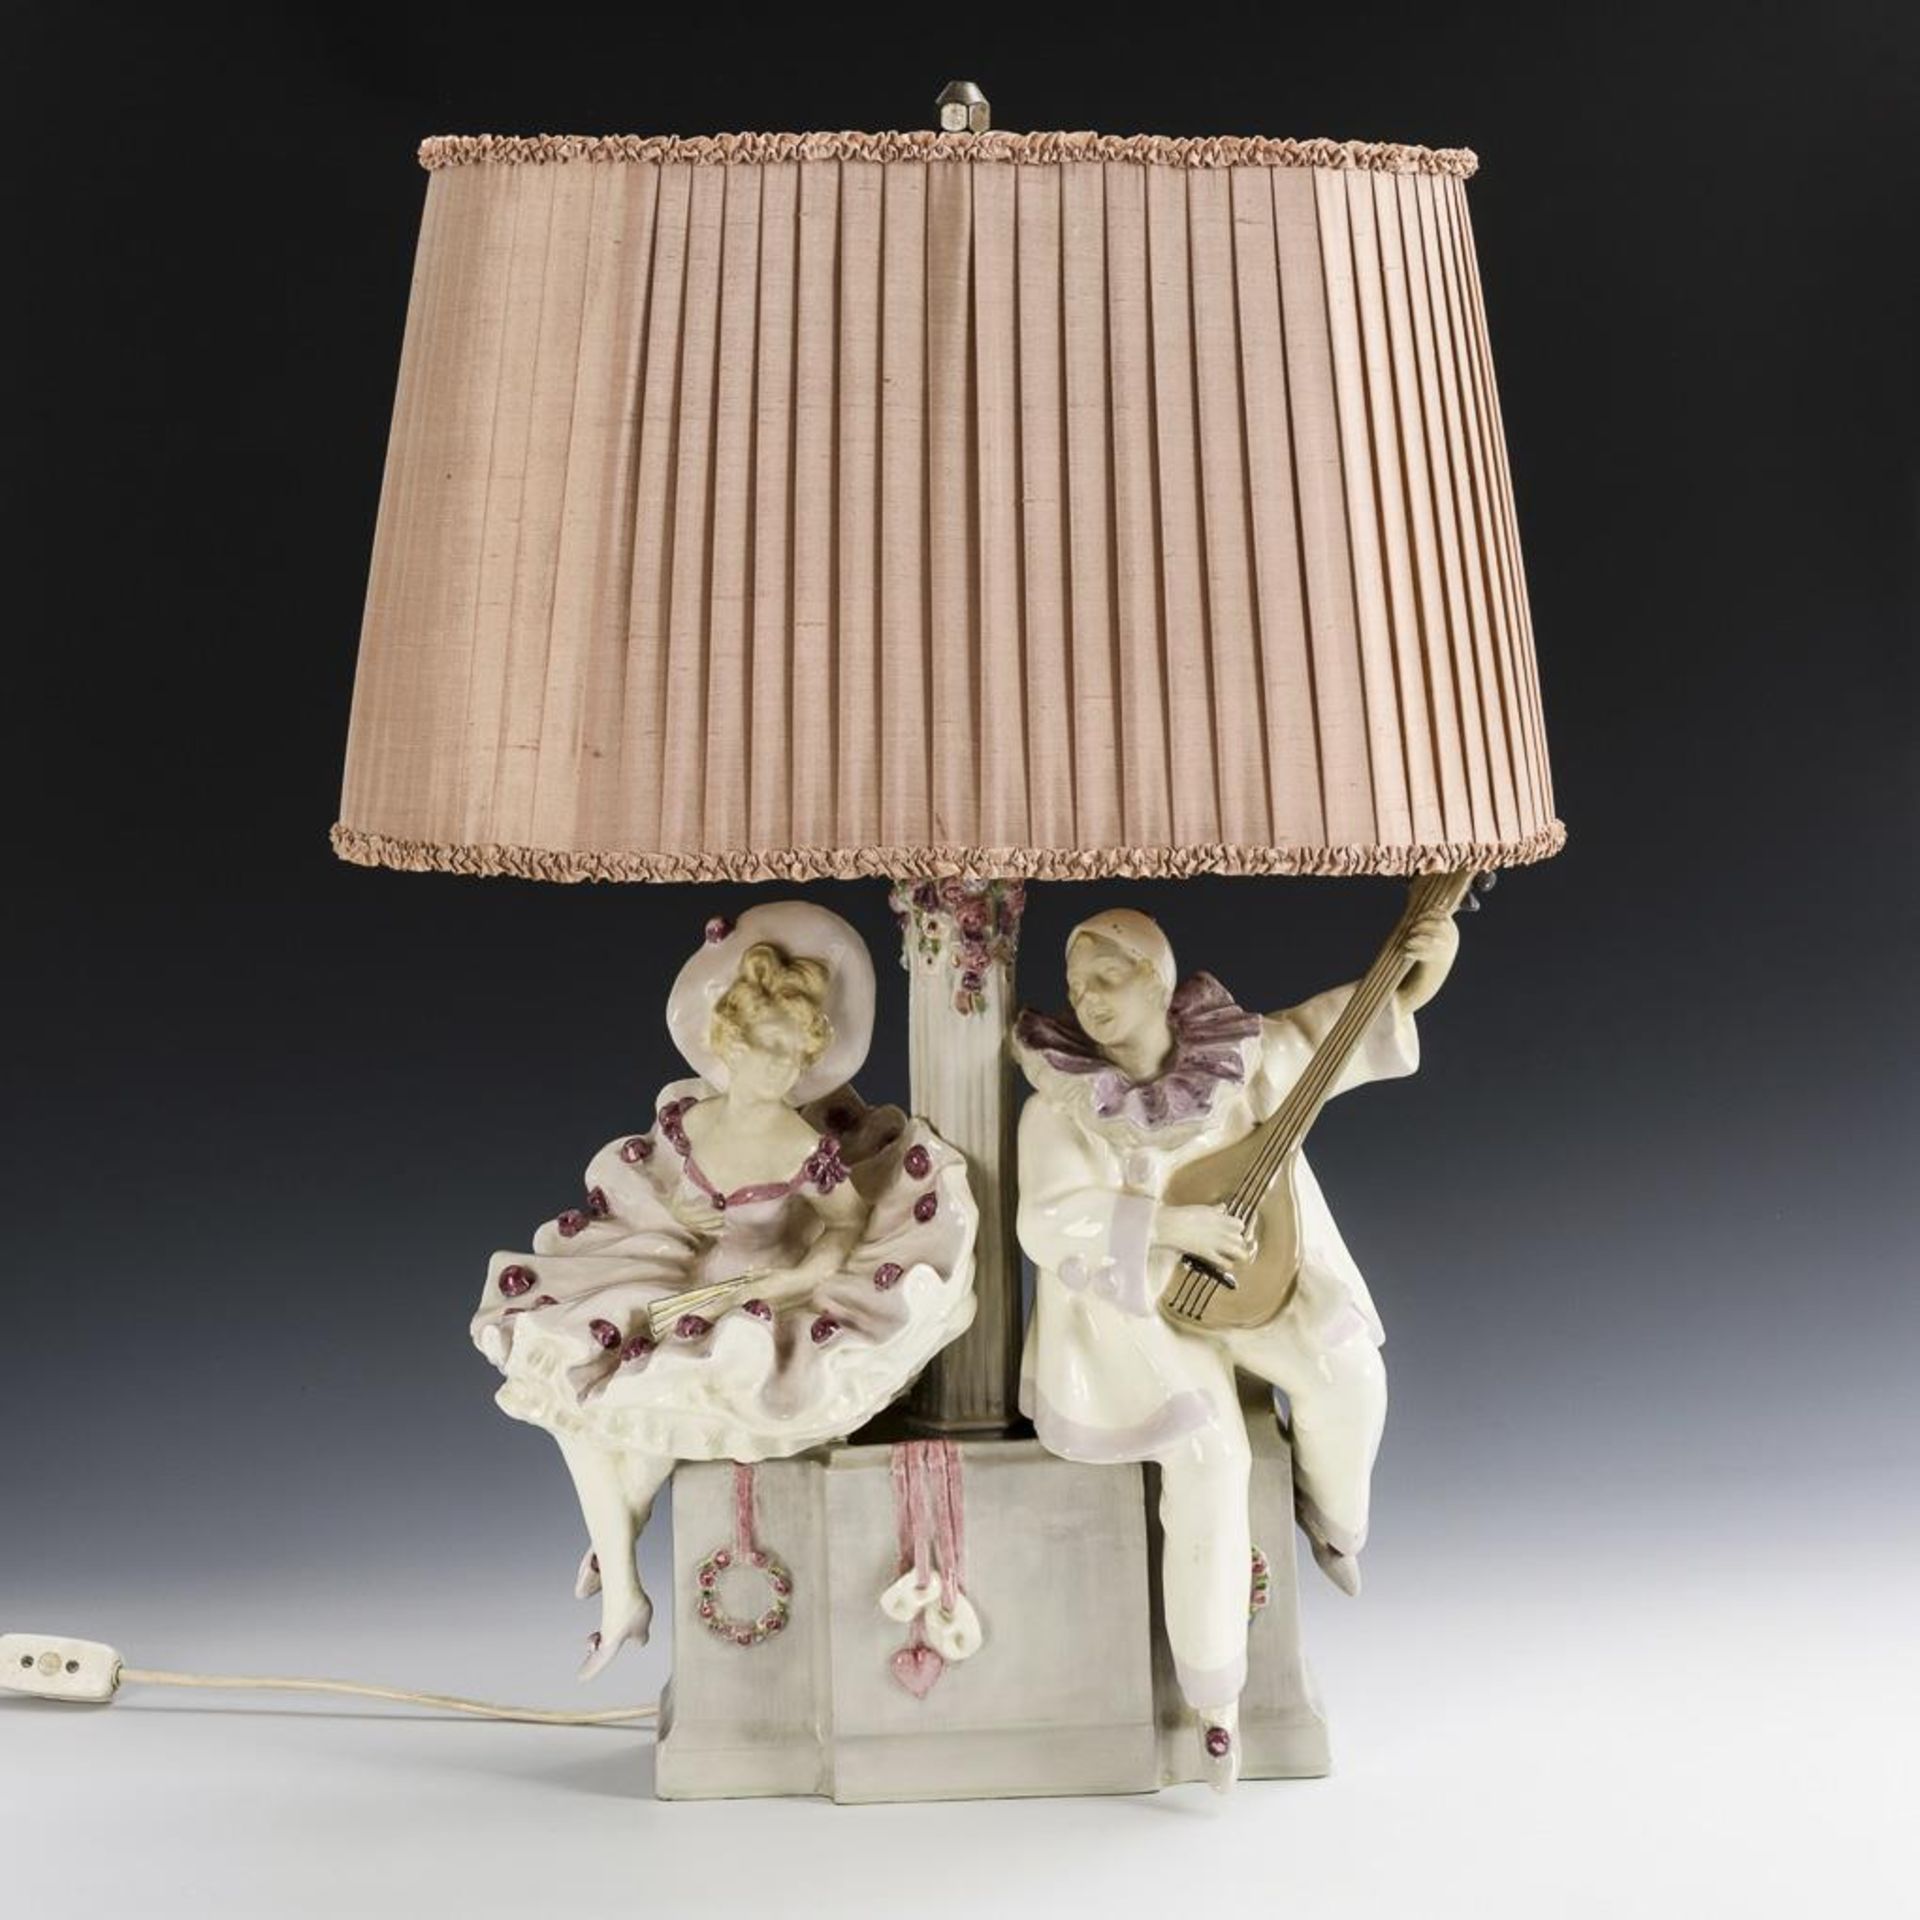 Tischlampe mit Keramik-Figuren: Harlekin und Colombine.  Wiener Emailfarbenwerk Schauer & Co.